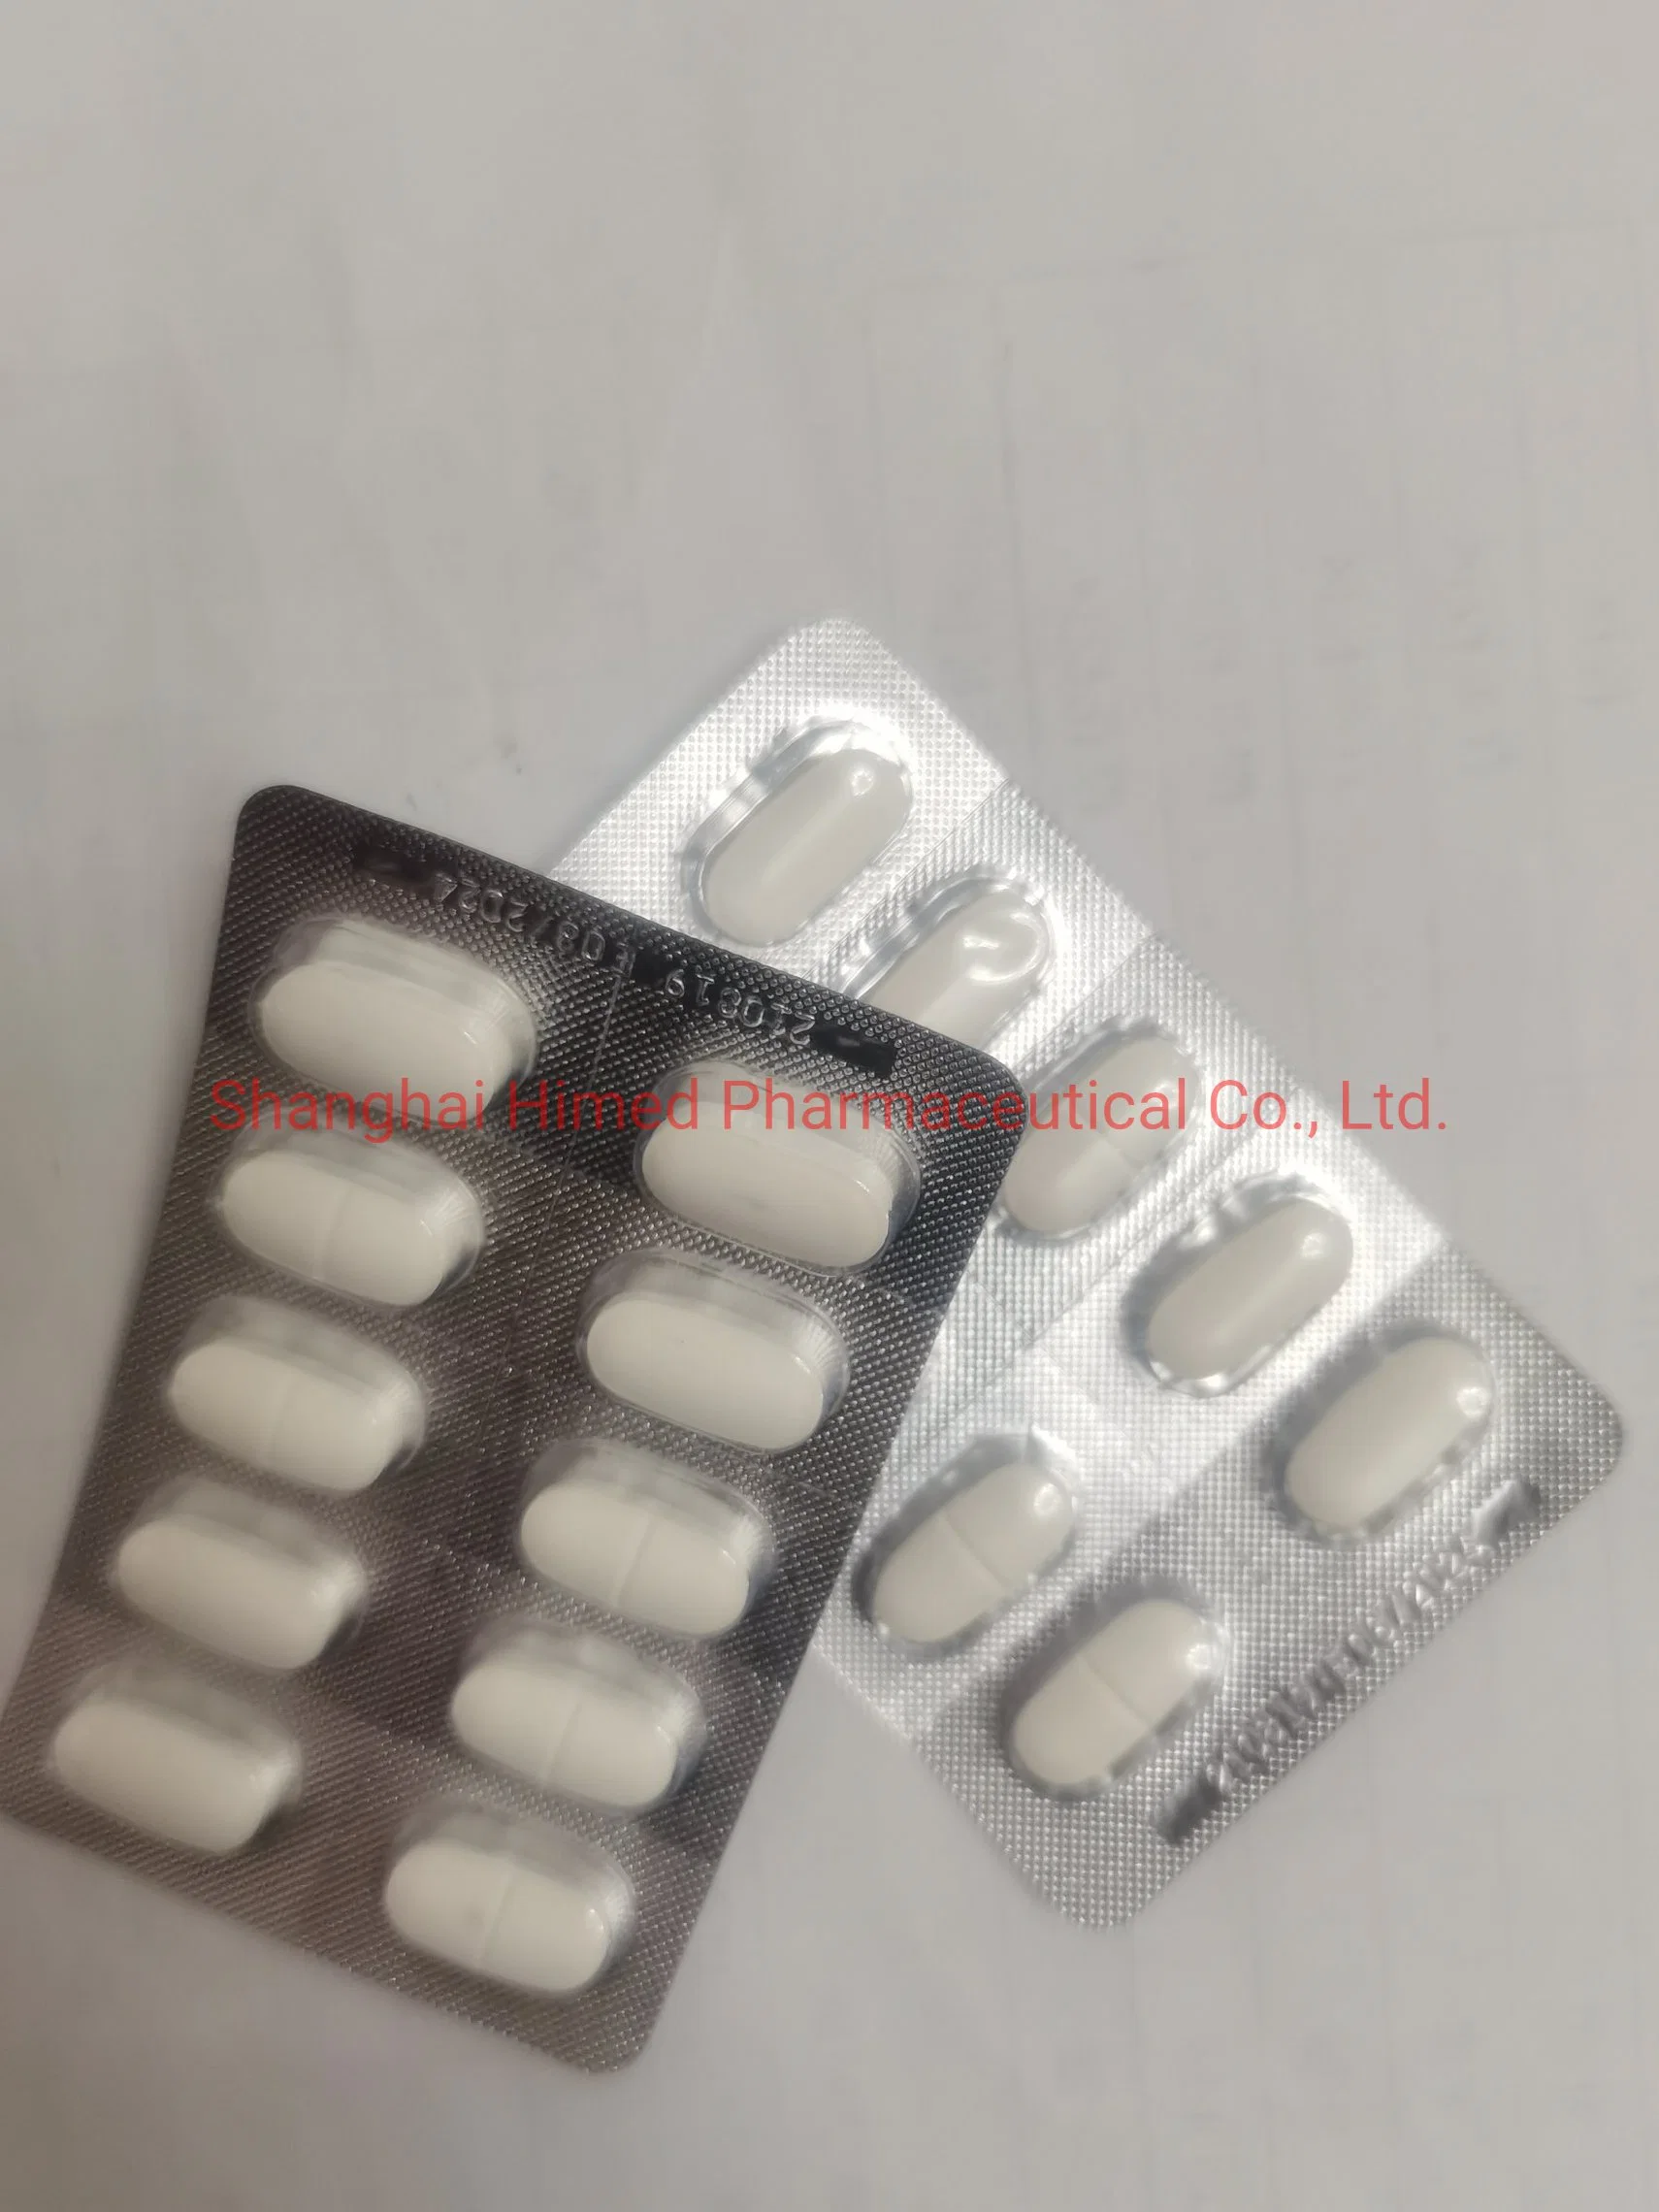 Erlotinib Hydrochloride Tablet 150mg